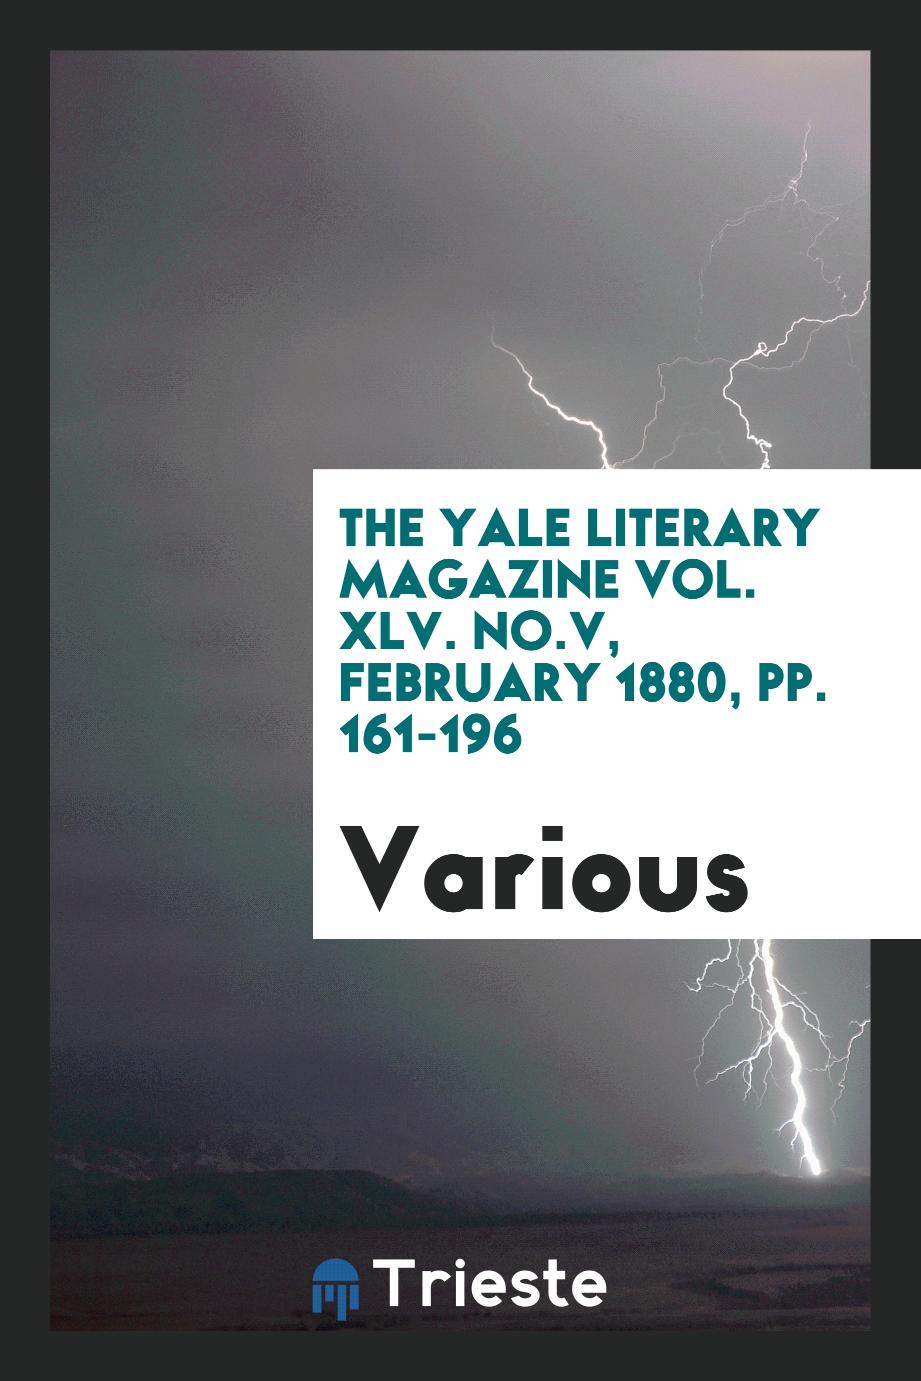 The Yale literary magazine Vol. XLV. No.V, february 1880, pp. 161-196